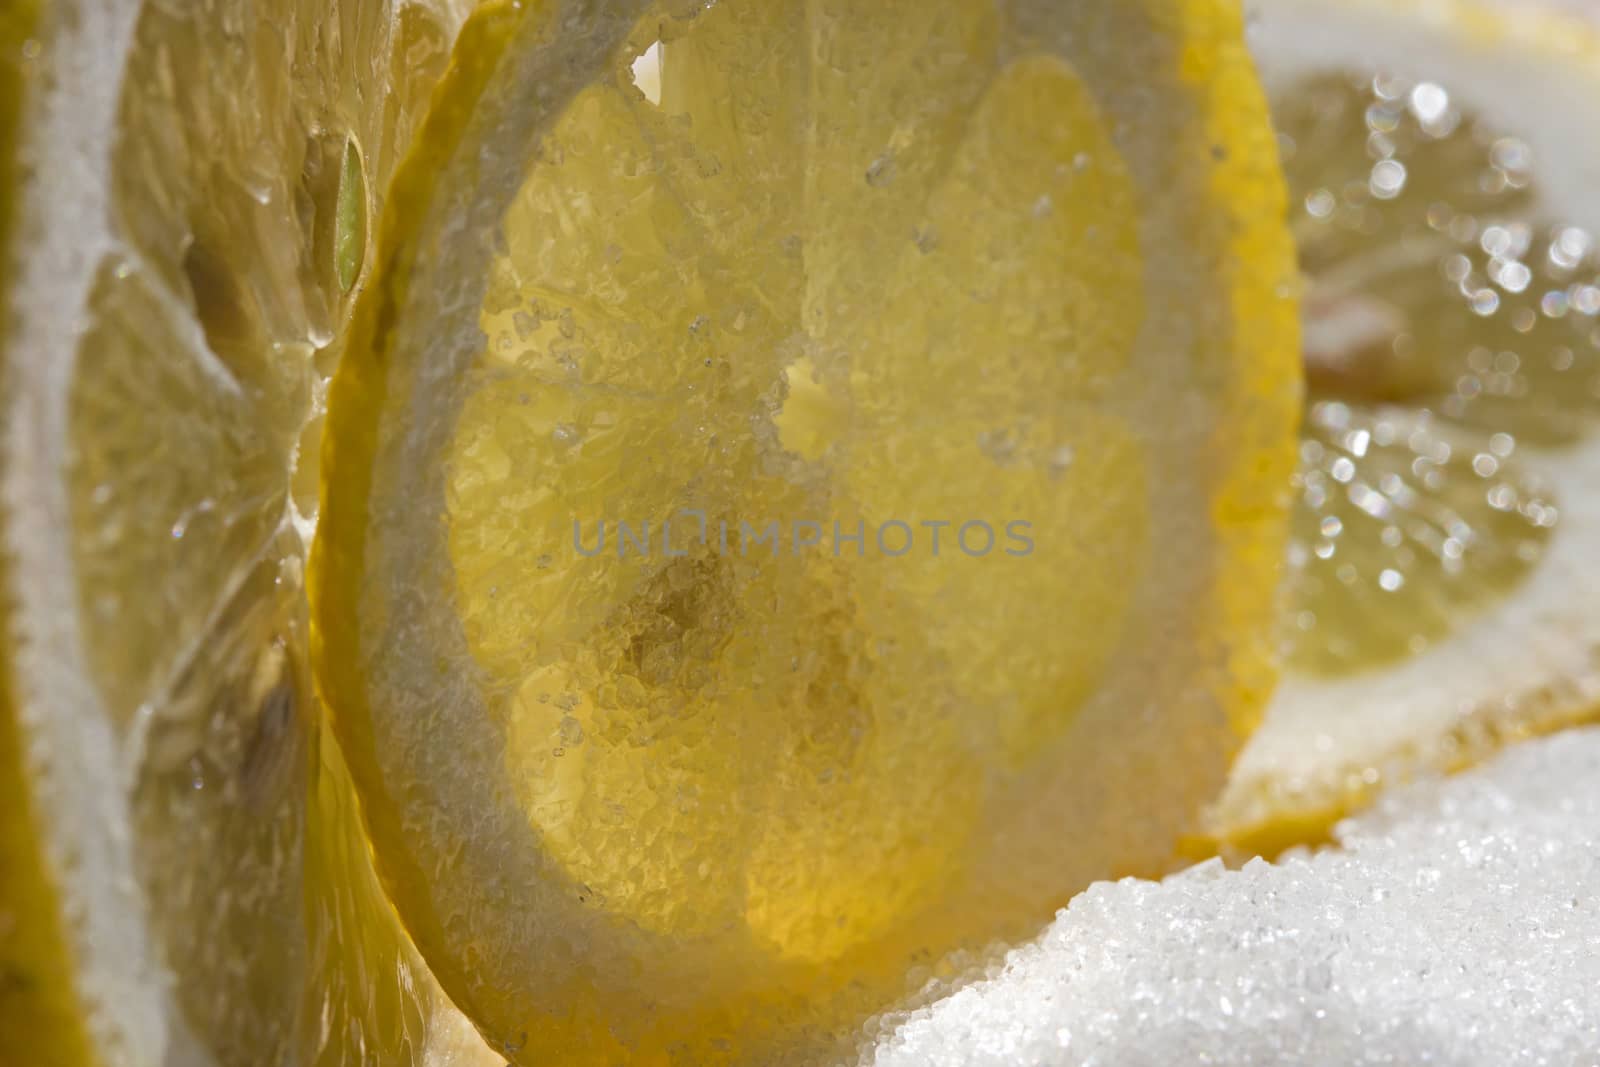  juicy lemons with suga by Olvita